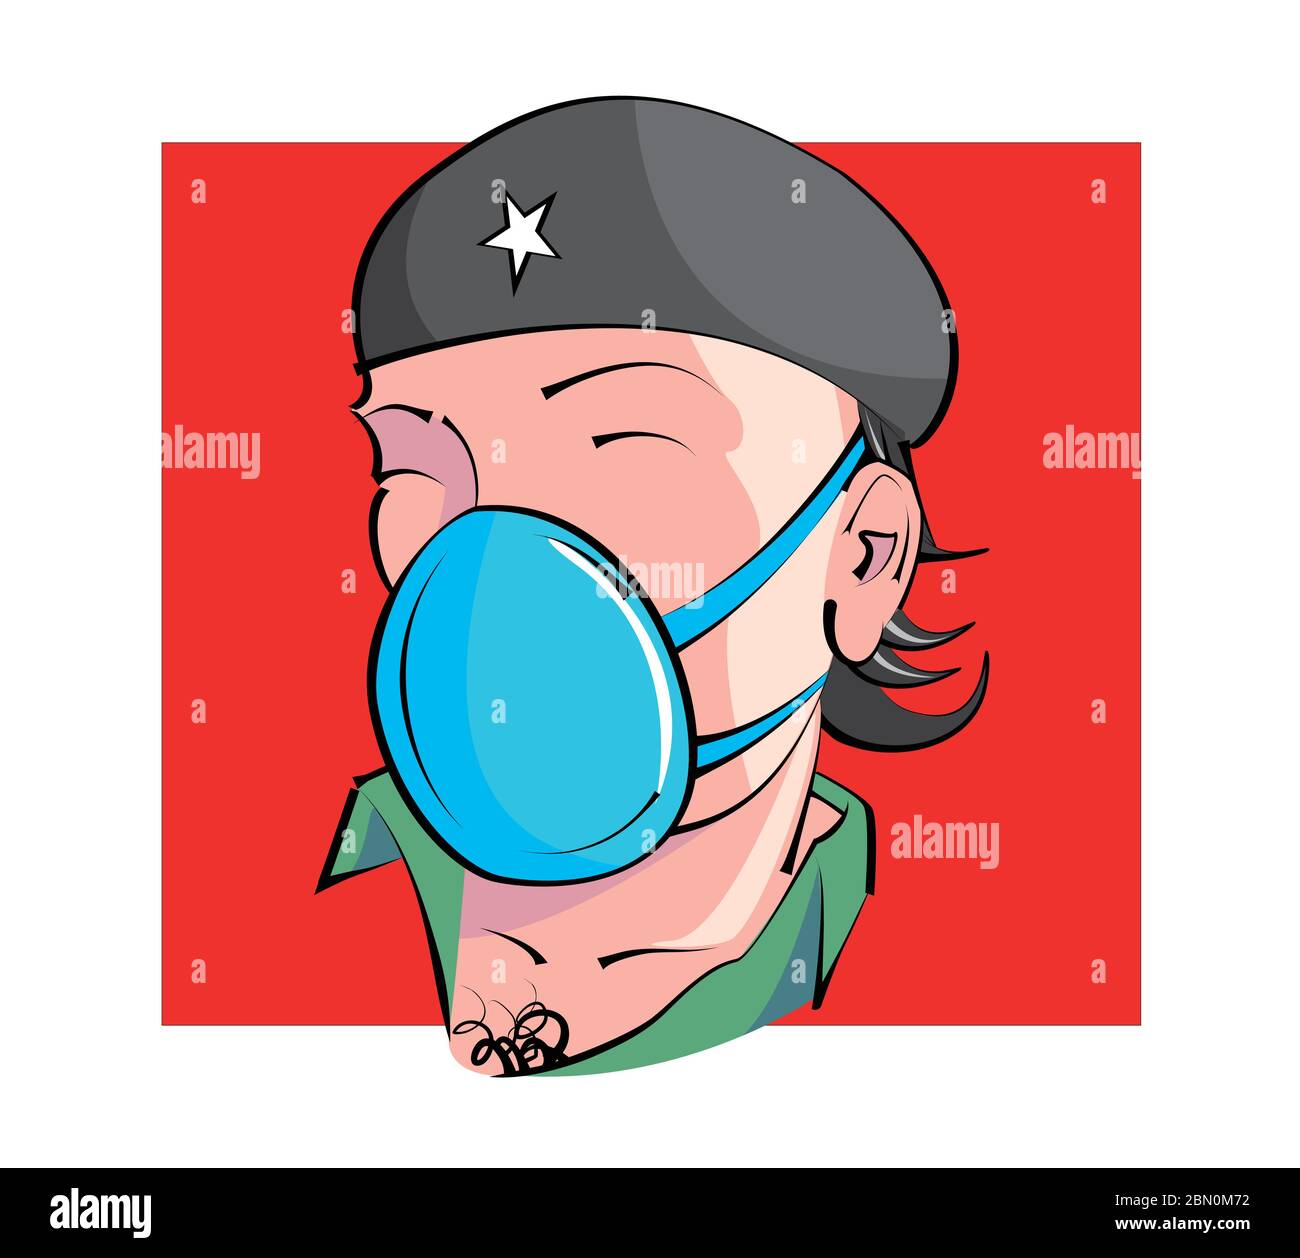 Dessin humoristique montrant le visage de la guérilla nommée Che Guevara avec masque sur fond rouge Illustration de Vecteur